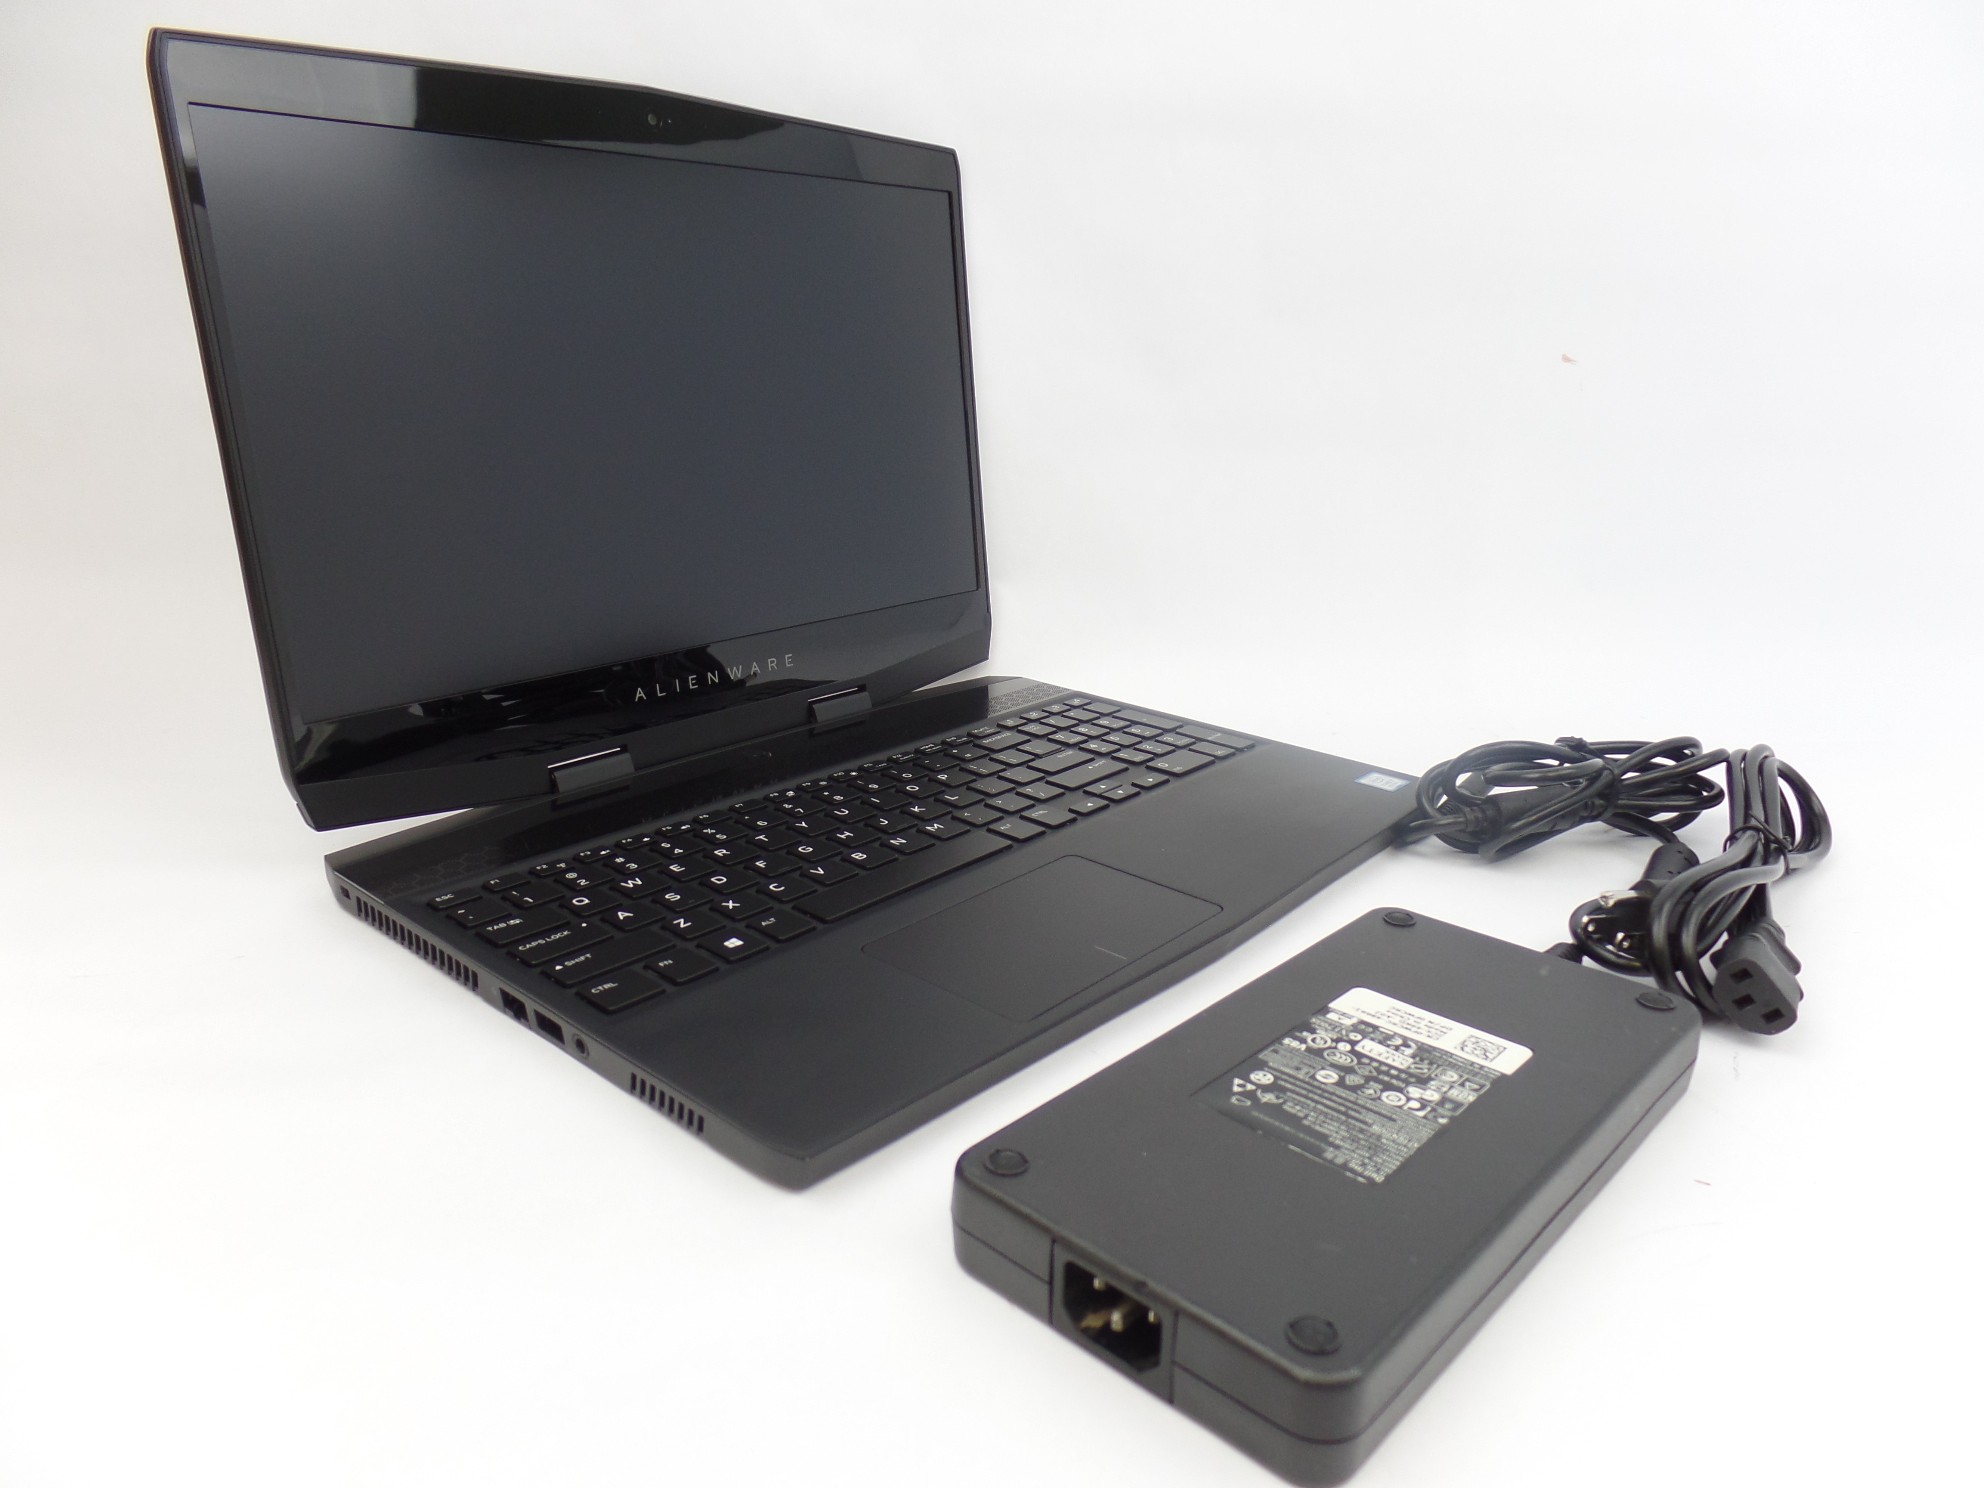 Alienware m15 15.6" FHD i7-8750H 2.2GHz 16GB 1TB+128GB GTX 1060 W10H Laptop U